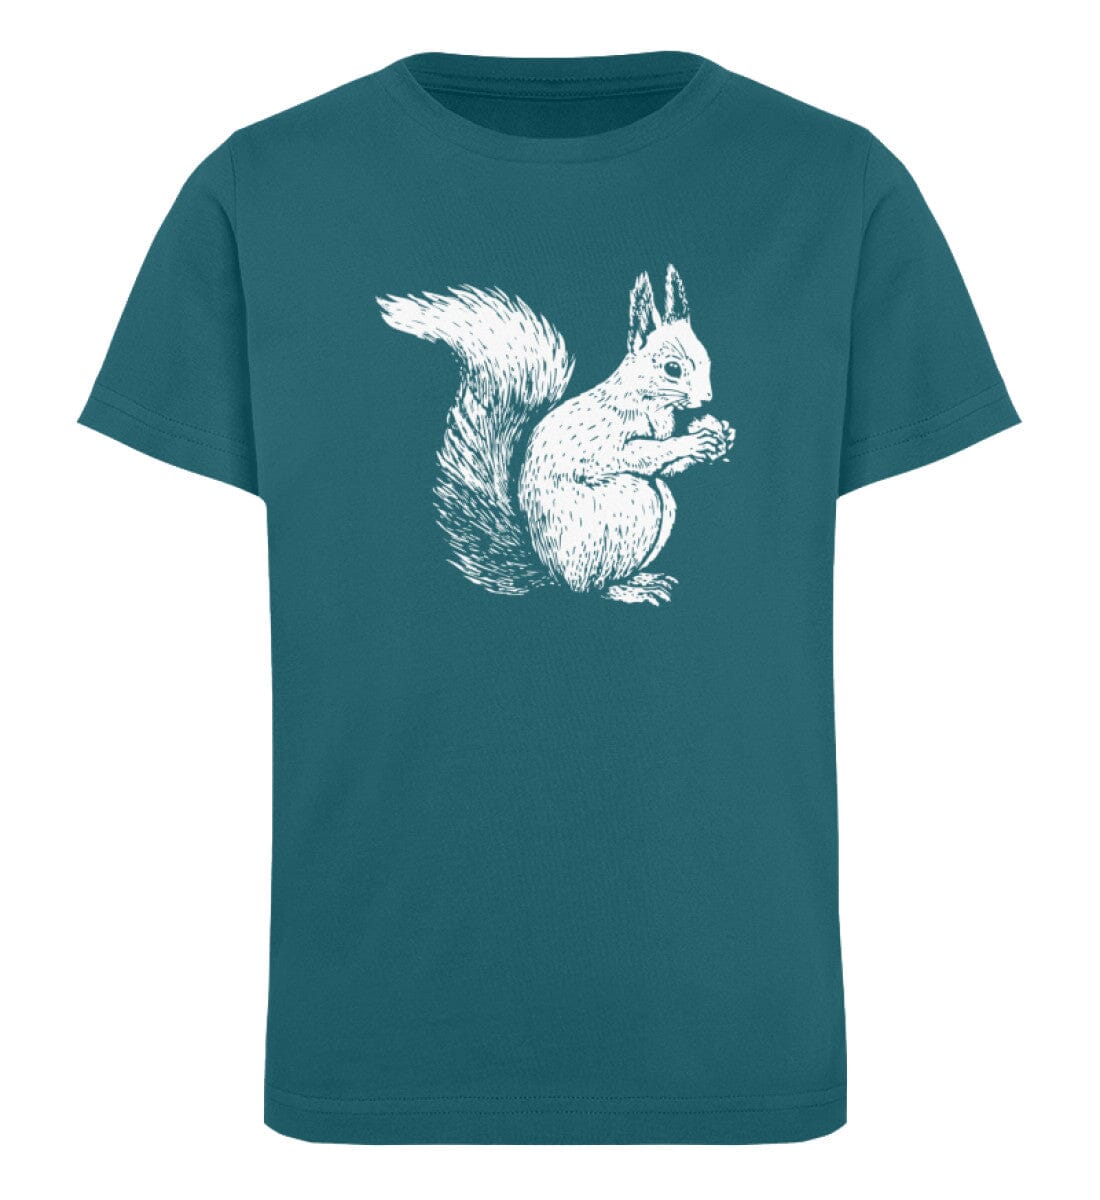 Tier des Waldes Eichhörnchen gezeichnet - Kinder Bio Shirt Ocean Depth 12/14 (152/164) 